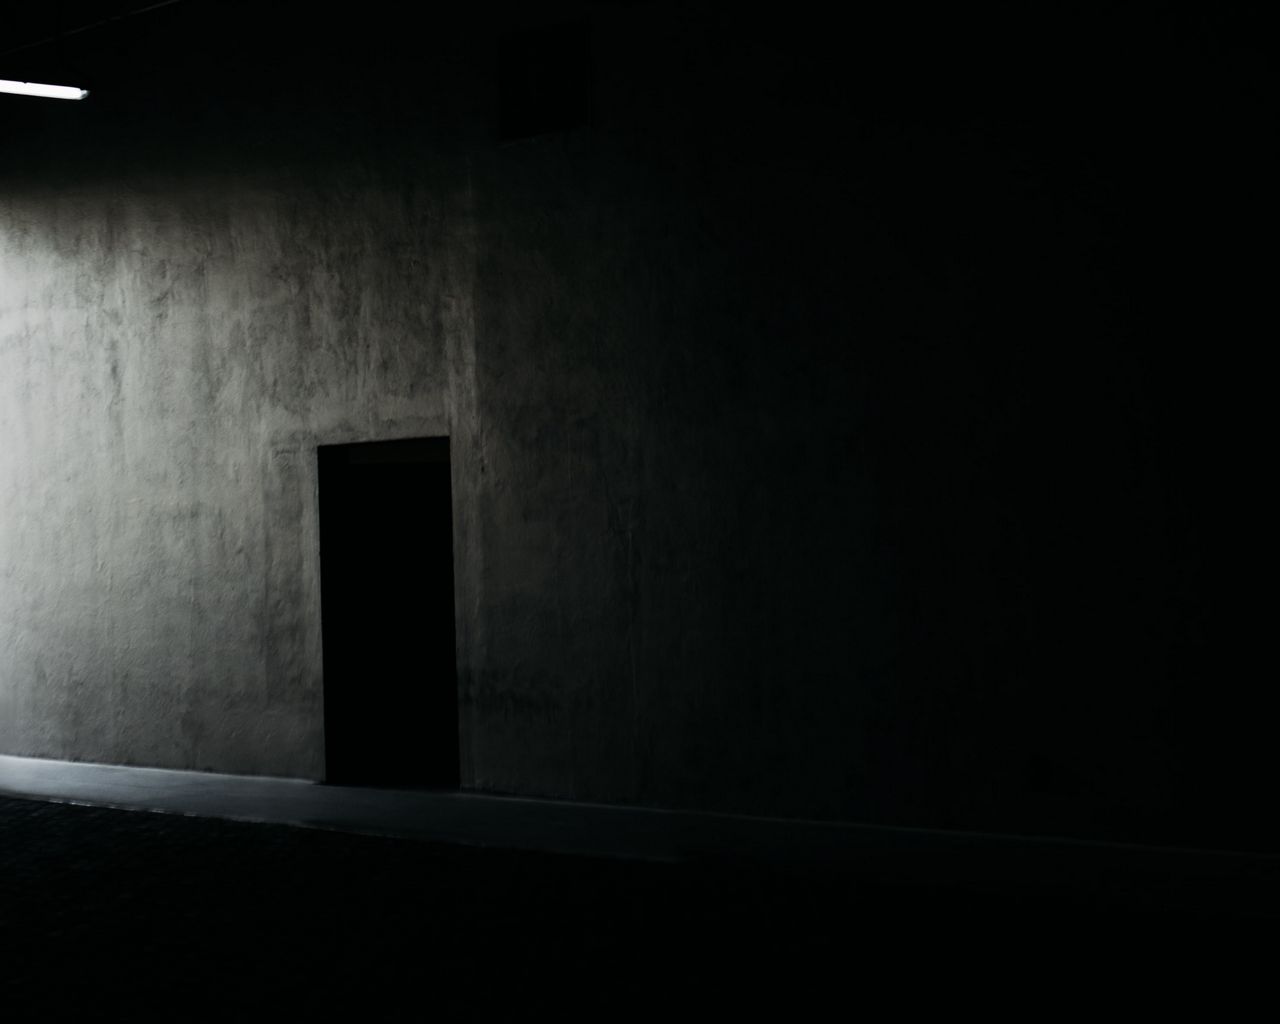 Dark room 4. Человек в темном помещении. Клетка в тёмном помещении. Робот на складе в темноте черный фон. Маленькая клетка в тёмном помещении.